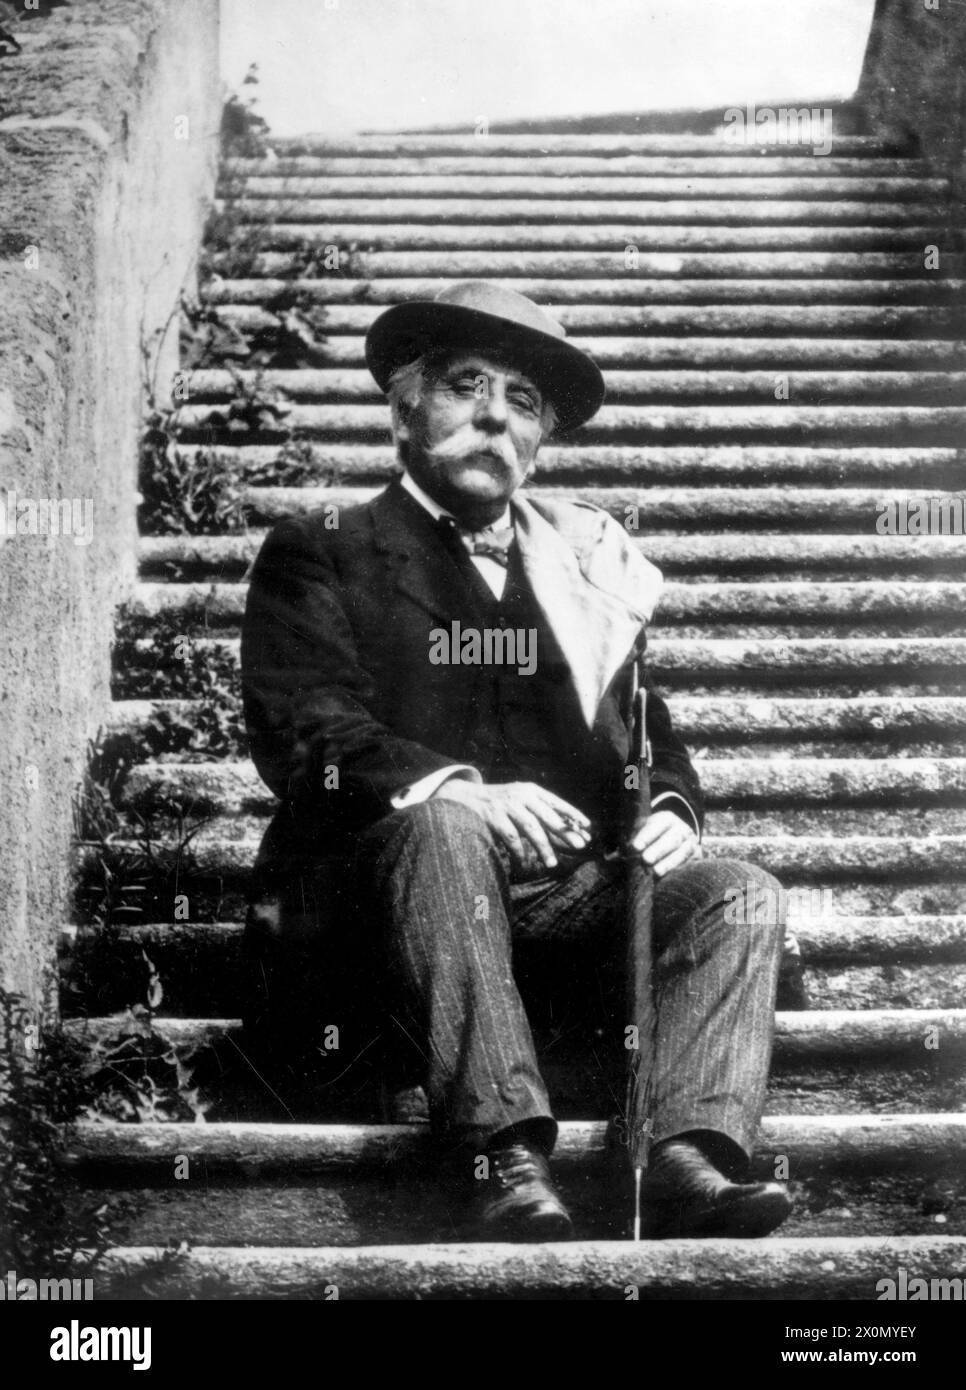 Gabriel Fauré assis sur un escalier, cigarette à la main Banque D'Images